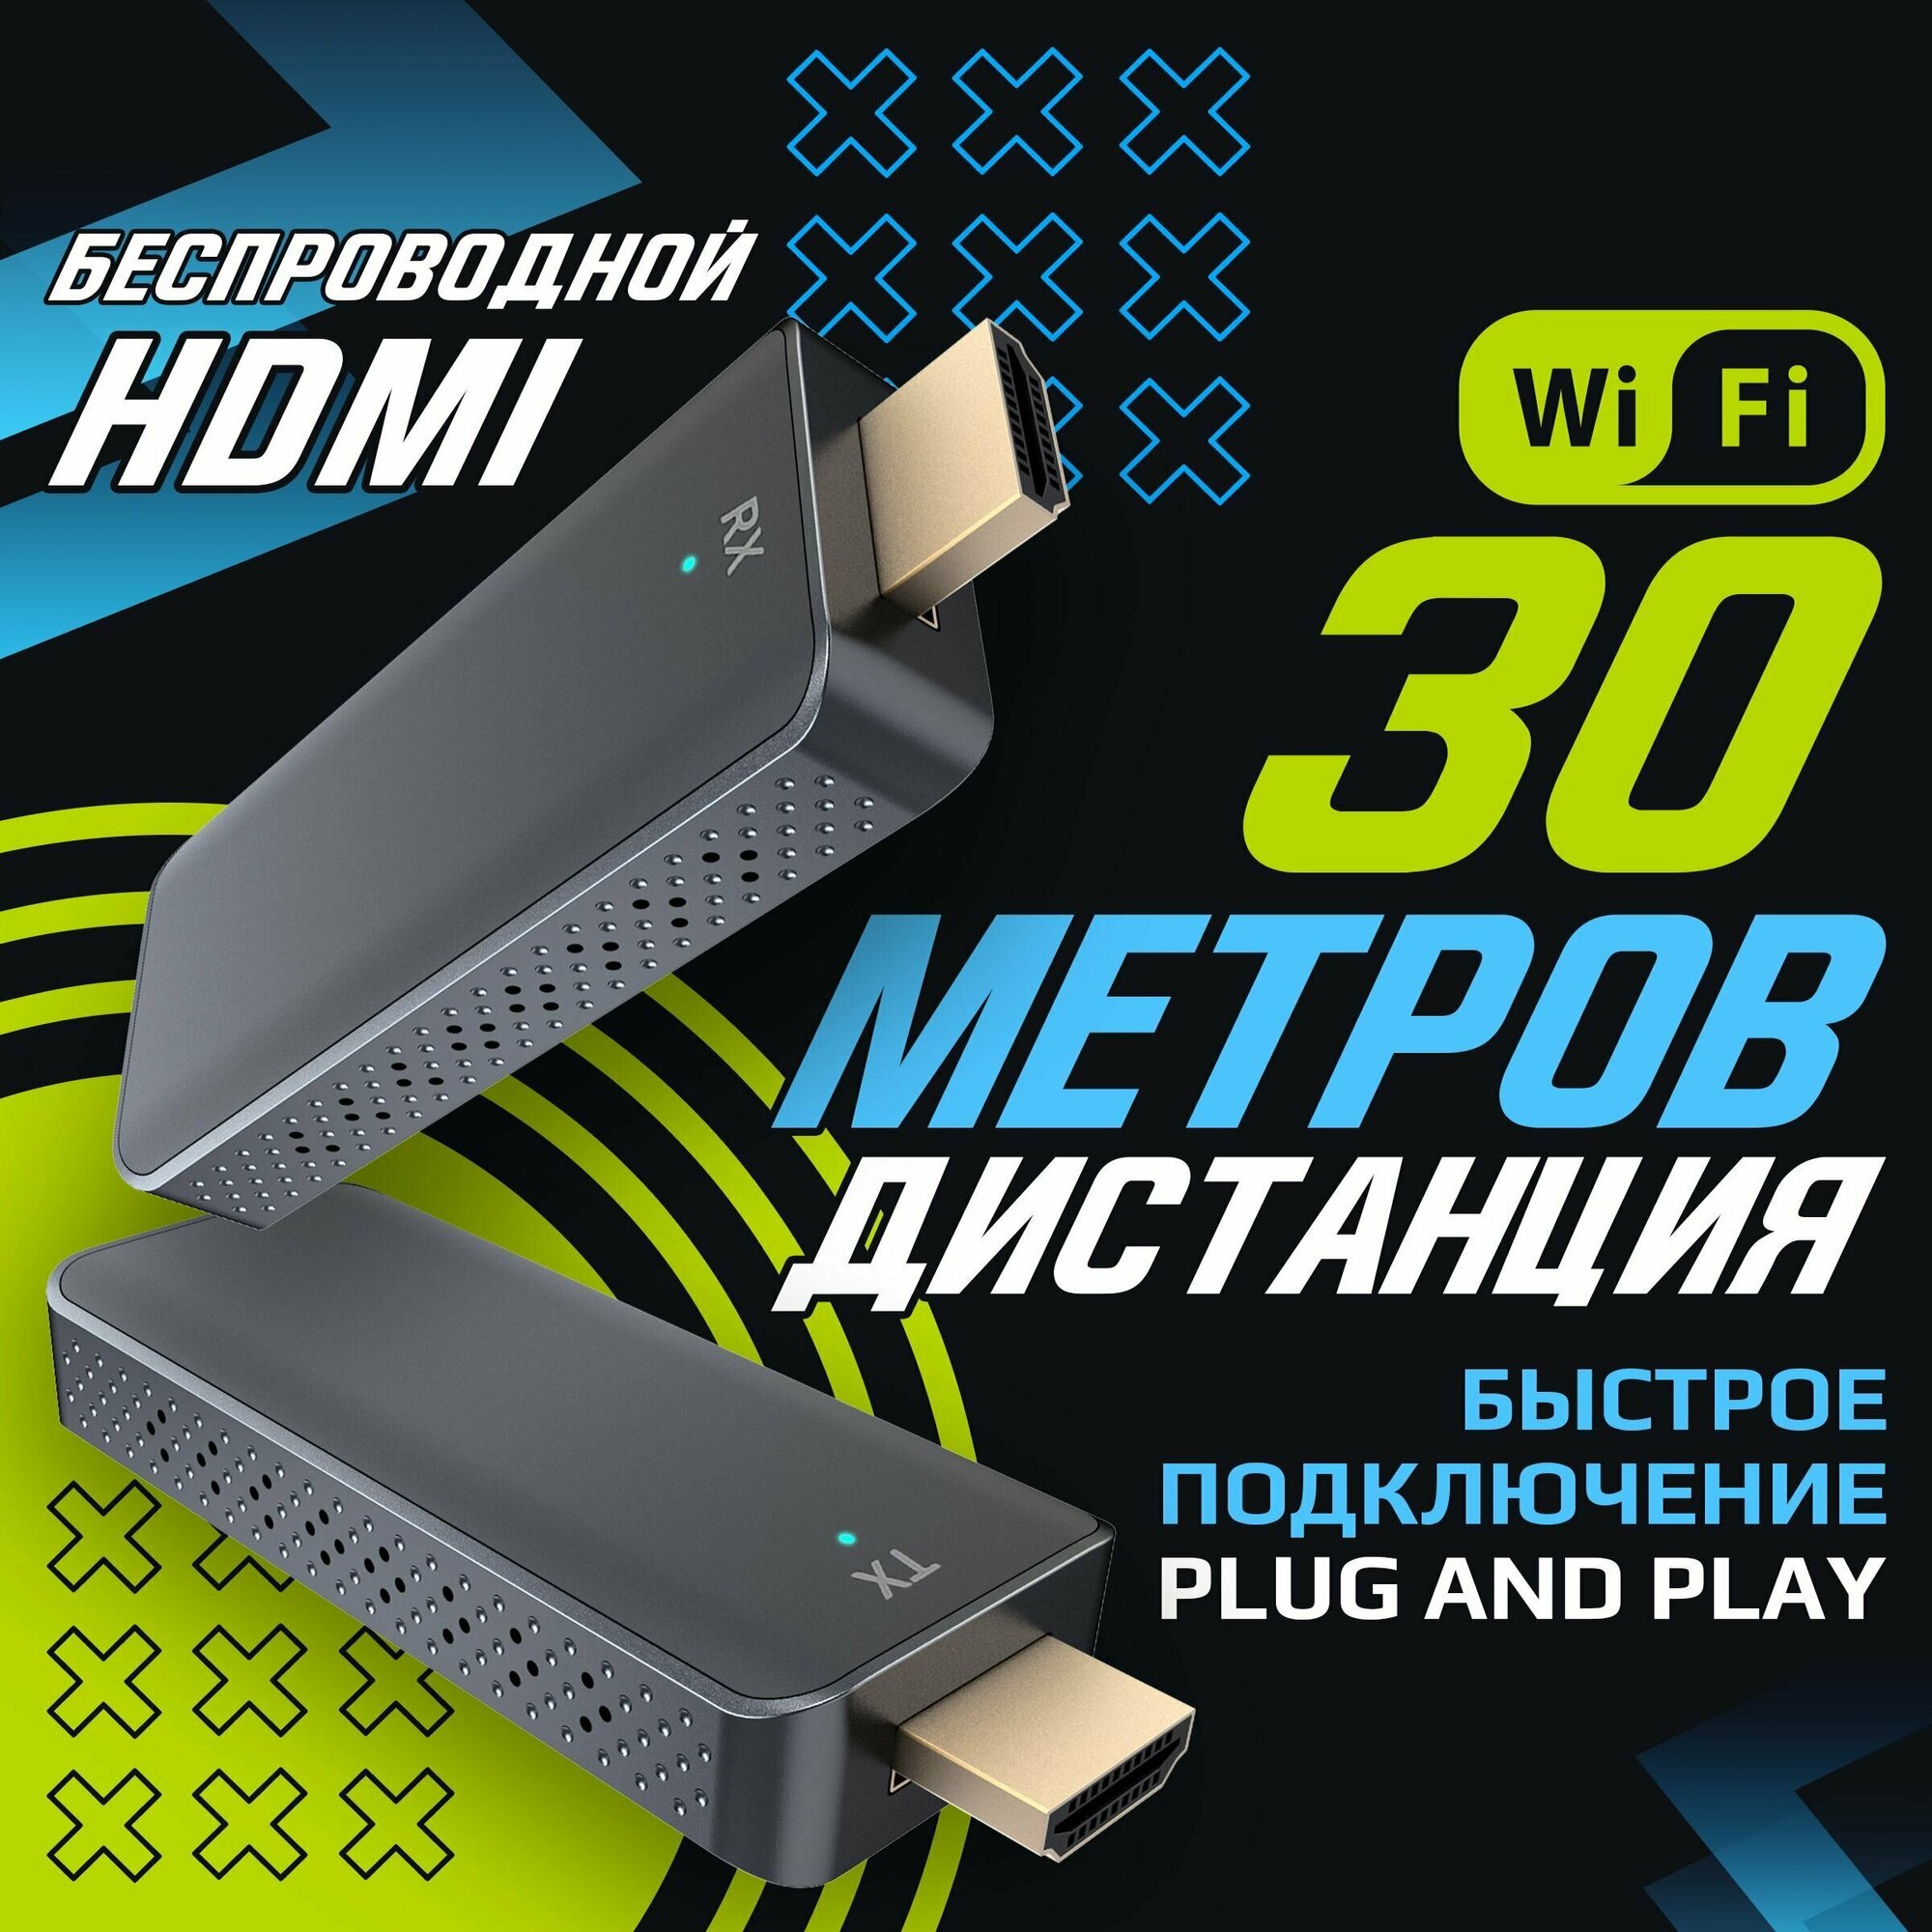 Беспроводной HDMI до 30 метров по Wi-Fi (Full HD)